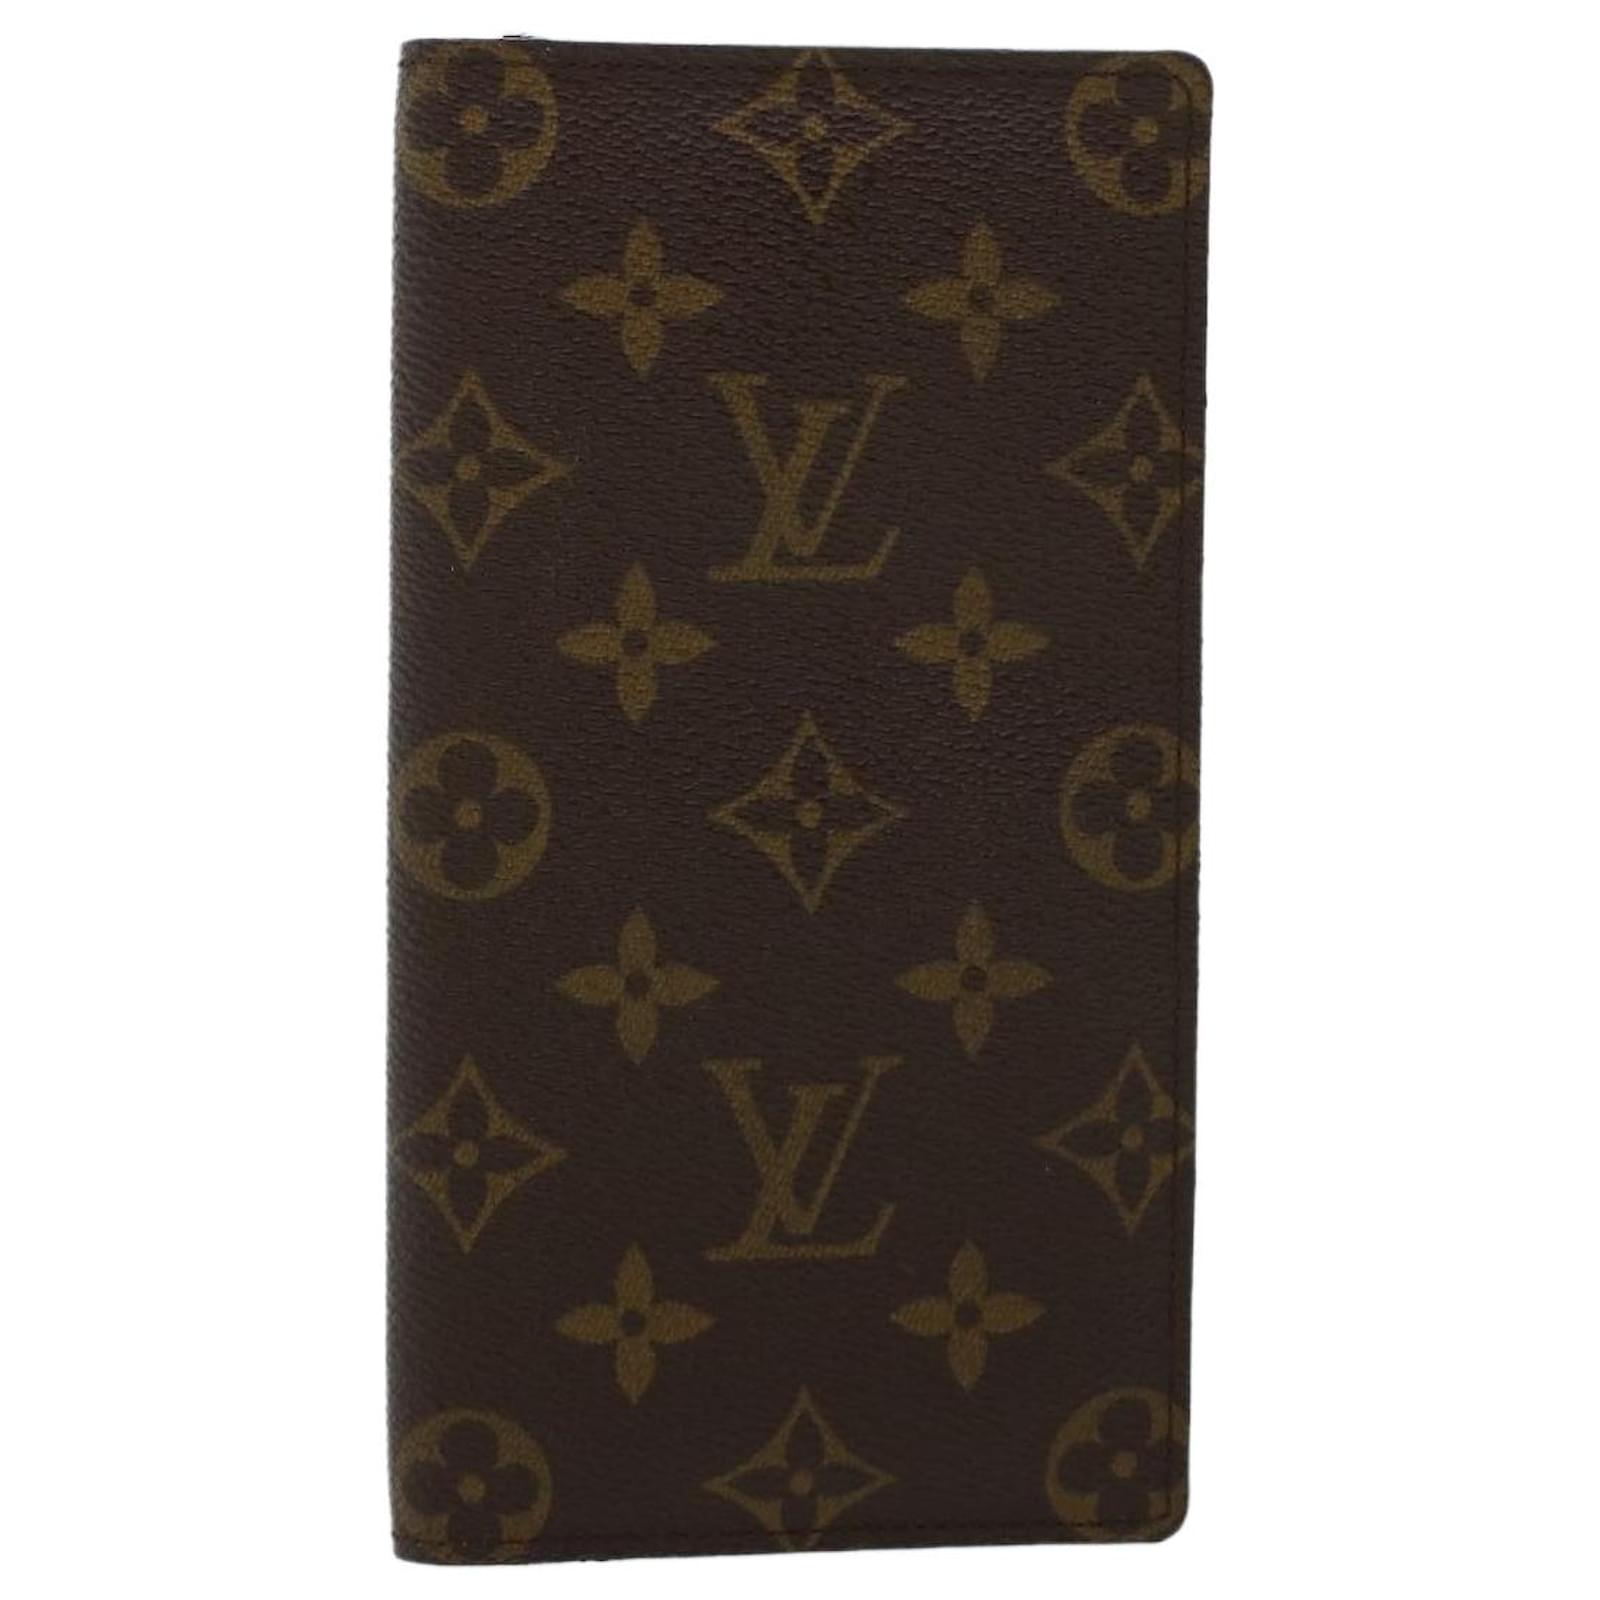 Louis Vuitton Monogram canvas passport holder. Dark brown Cloth